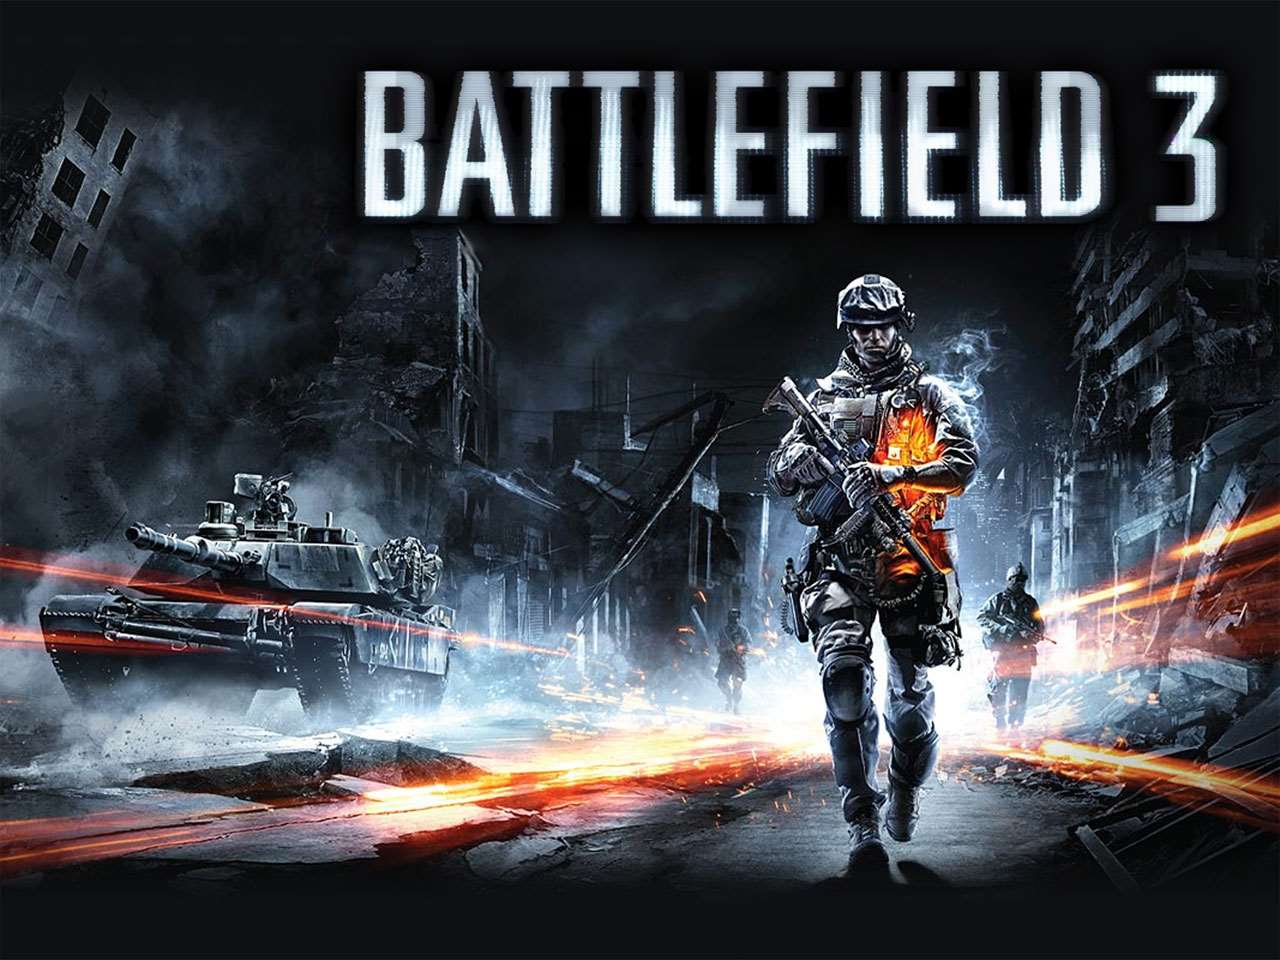 Battlefield 3 GameInformer Wallpaper (1280 x 960)